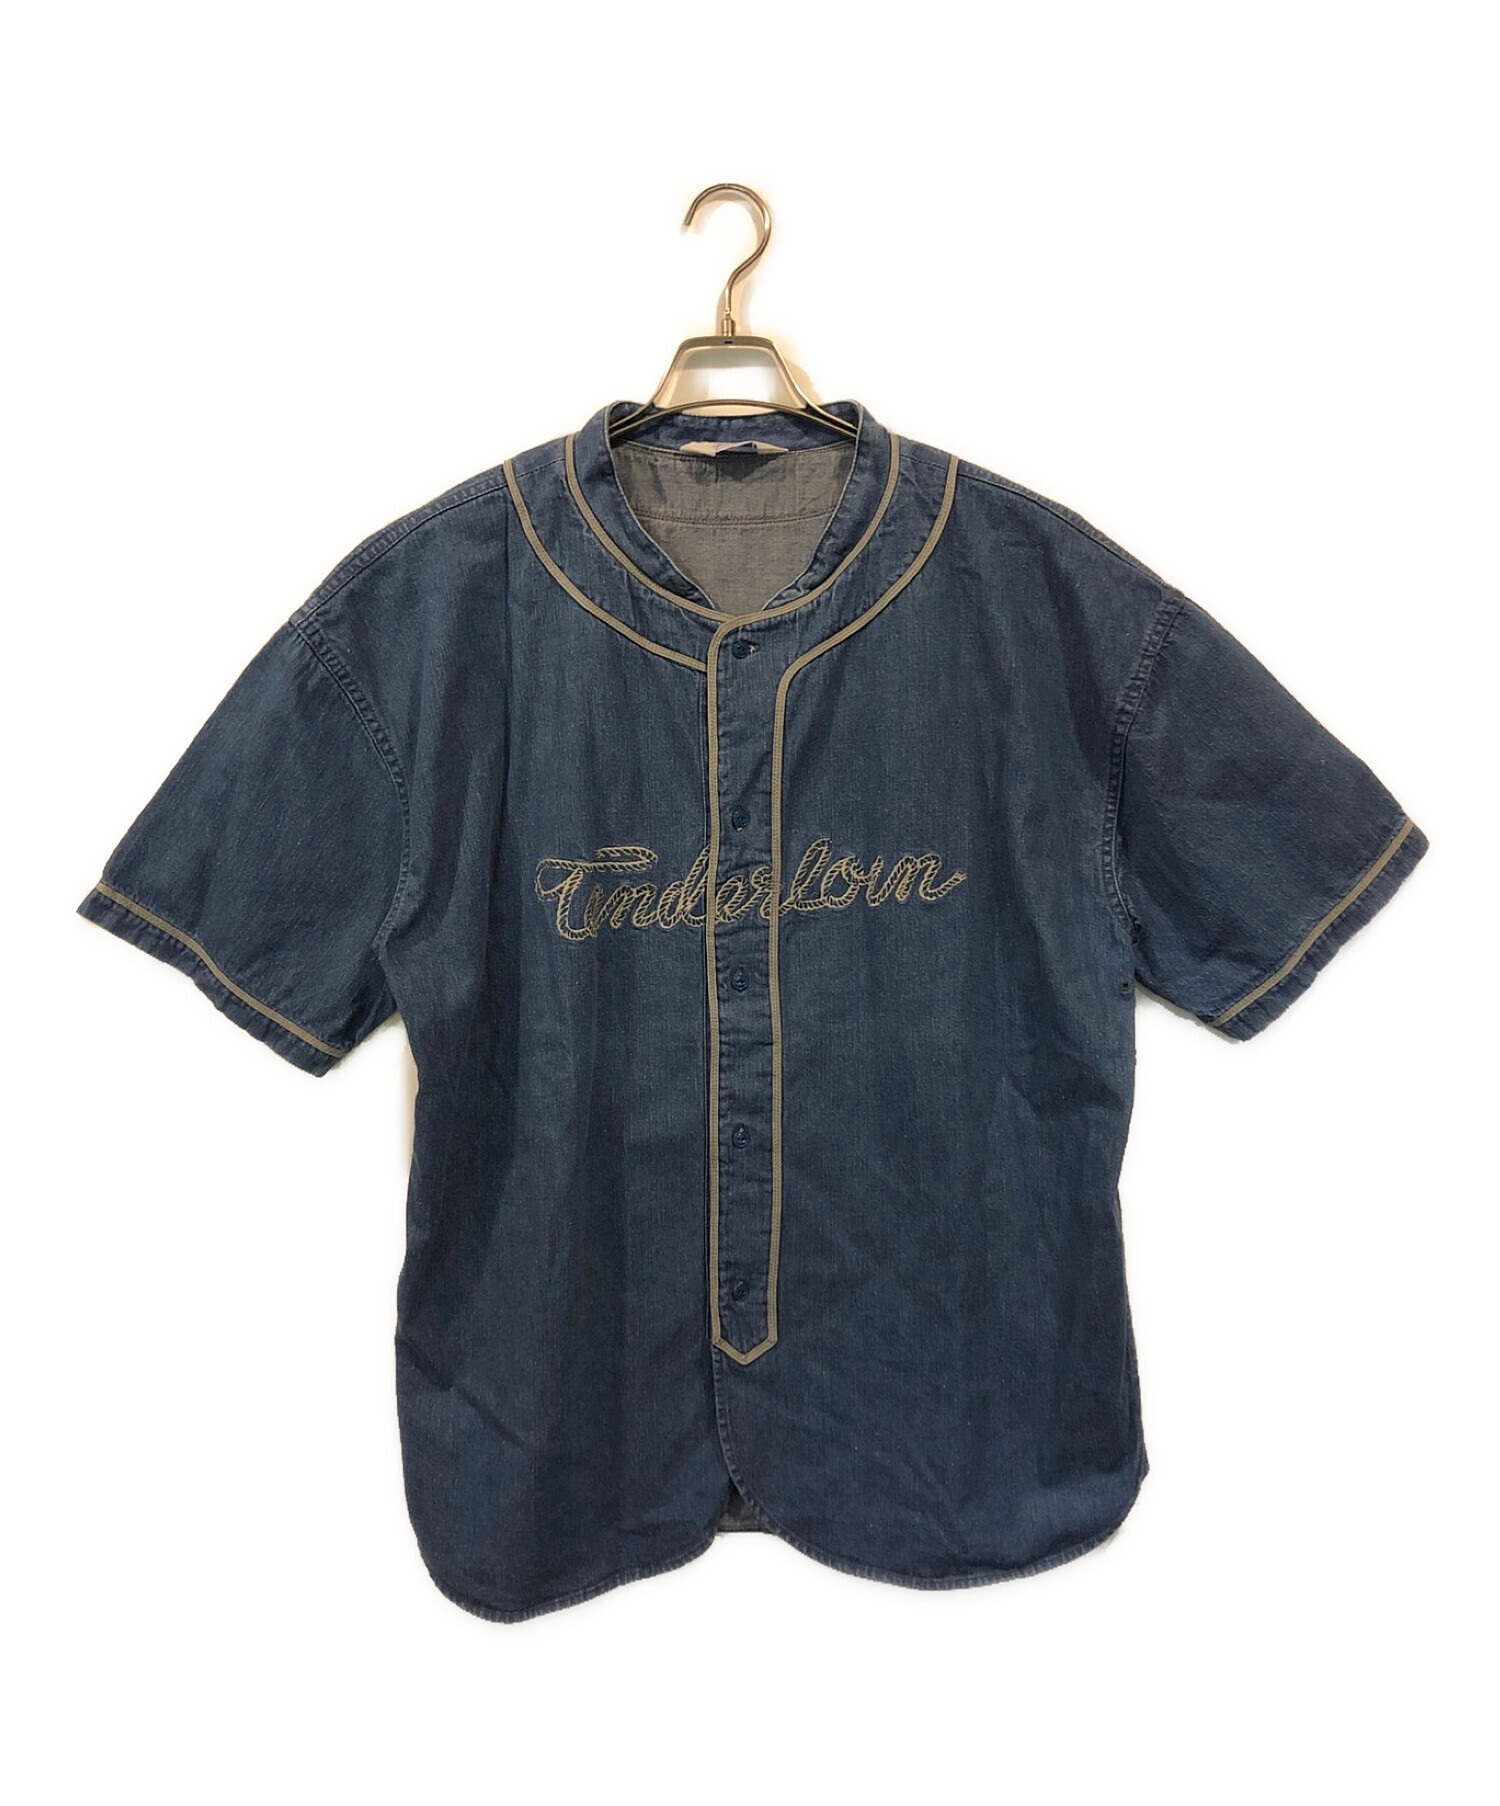 TENDERLOIN テンダーロイン デニム ベースボールシャツよろしくお願いします